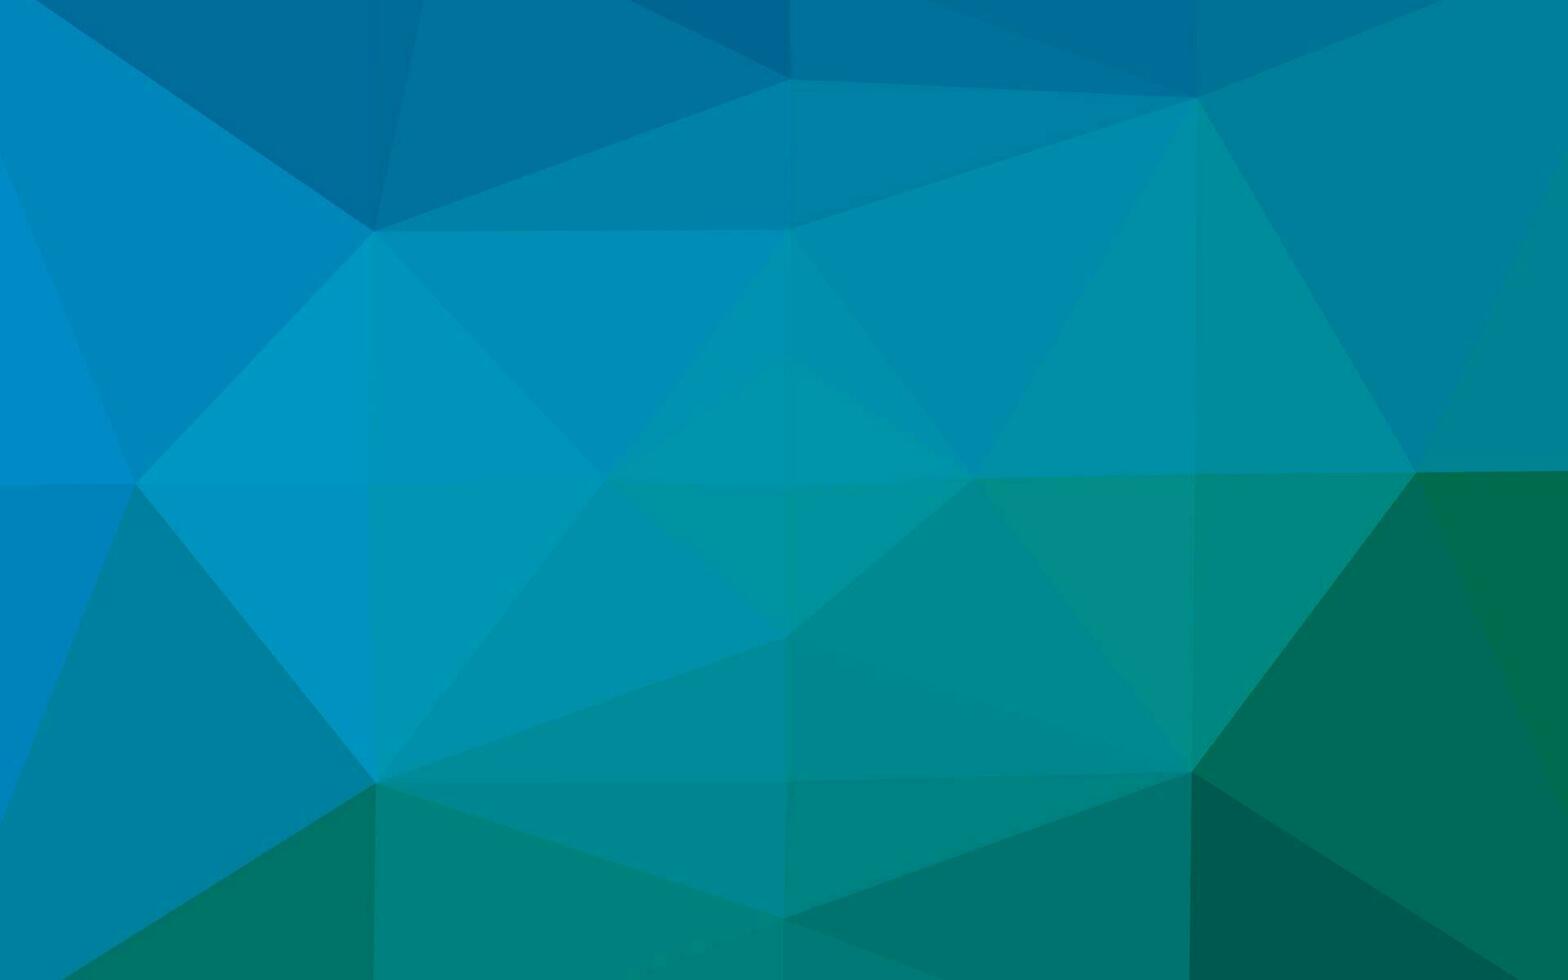 plantilla de mosaico de triángulo vector azul claro, verde.